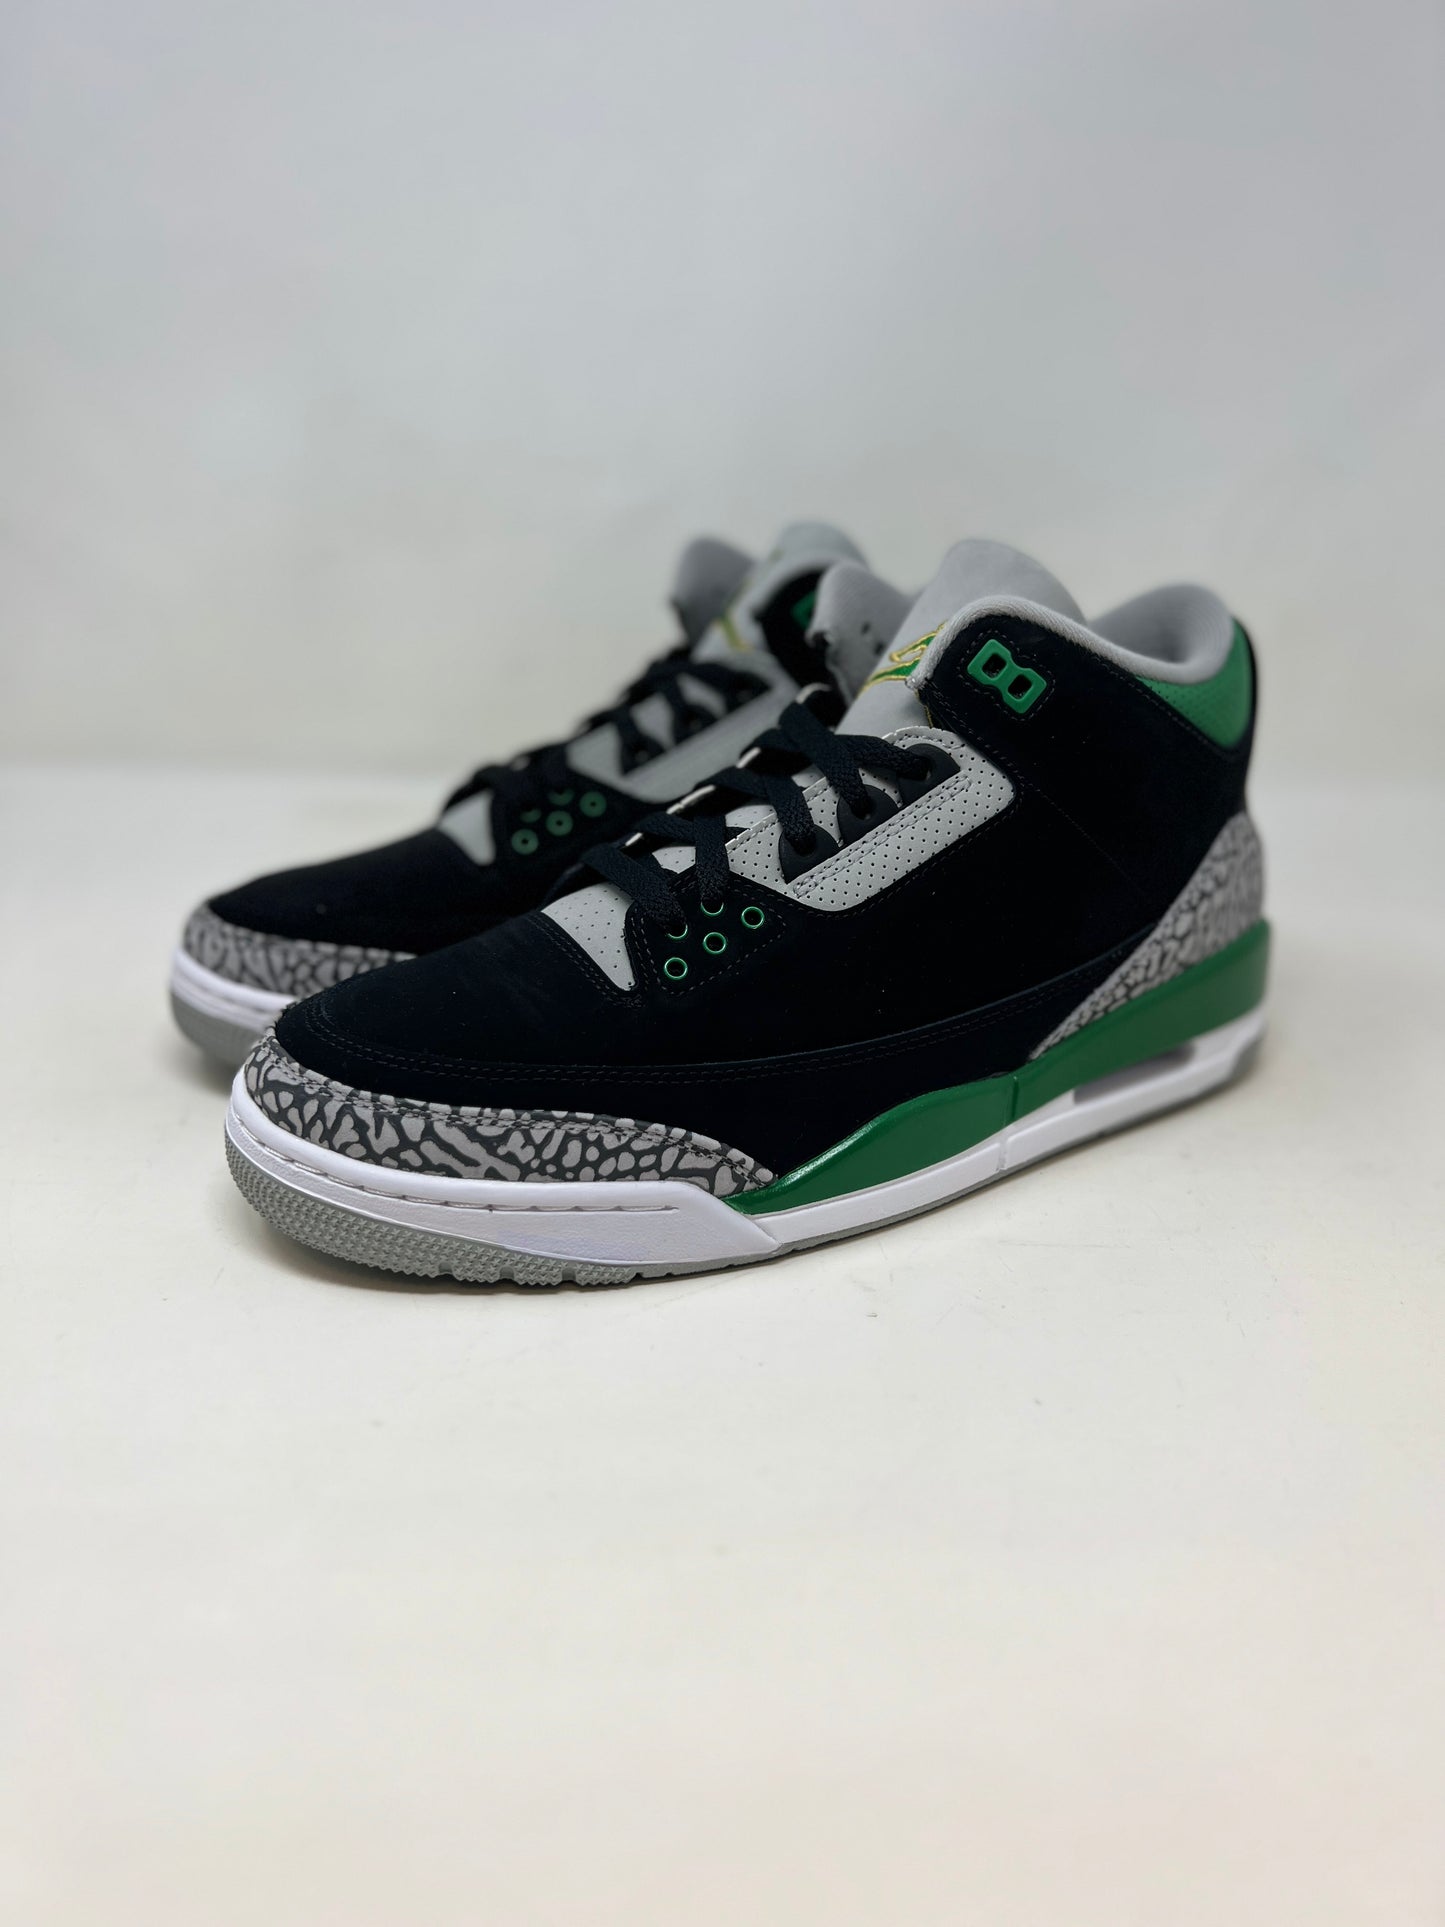 Nike Air Jordan 3 Retro 'Pine Green'